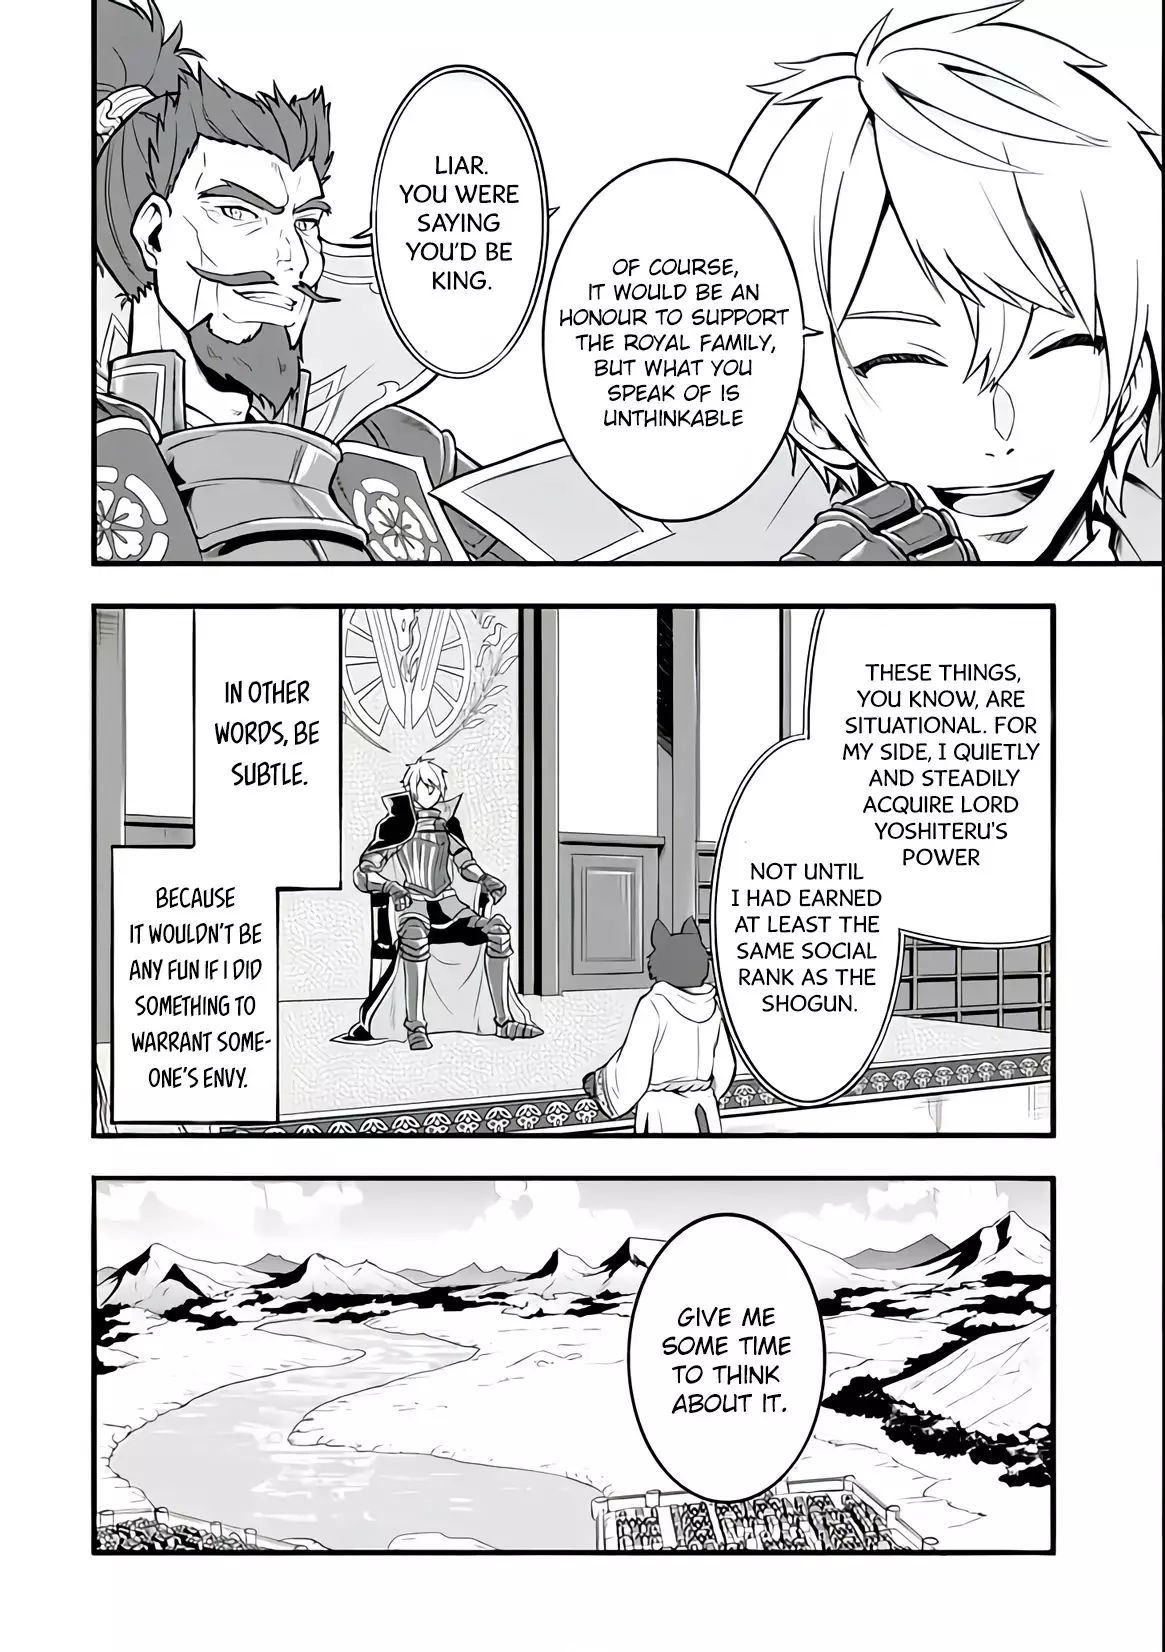 Mysterious Job Called Oda Nobunaga - 11 page 4-a3c747bc